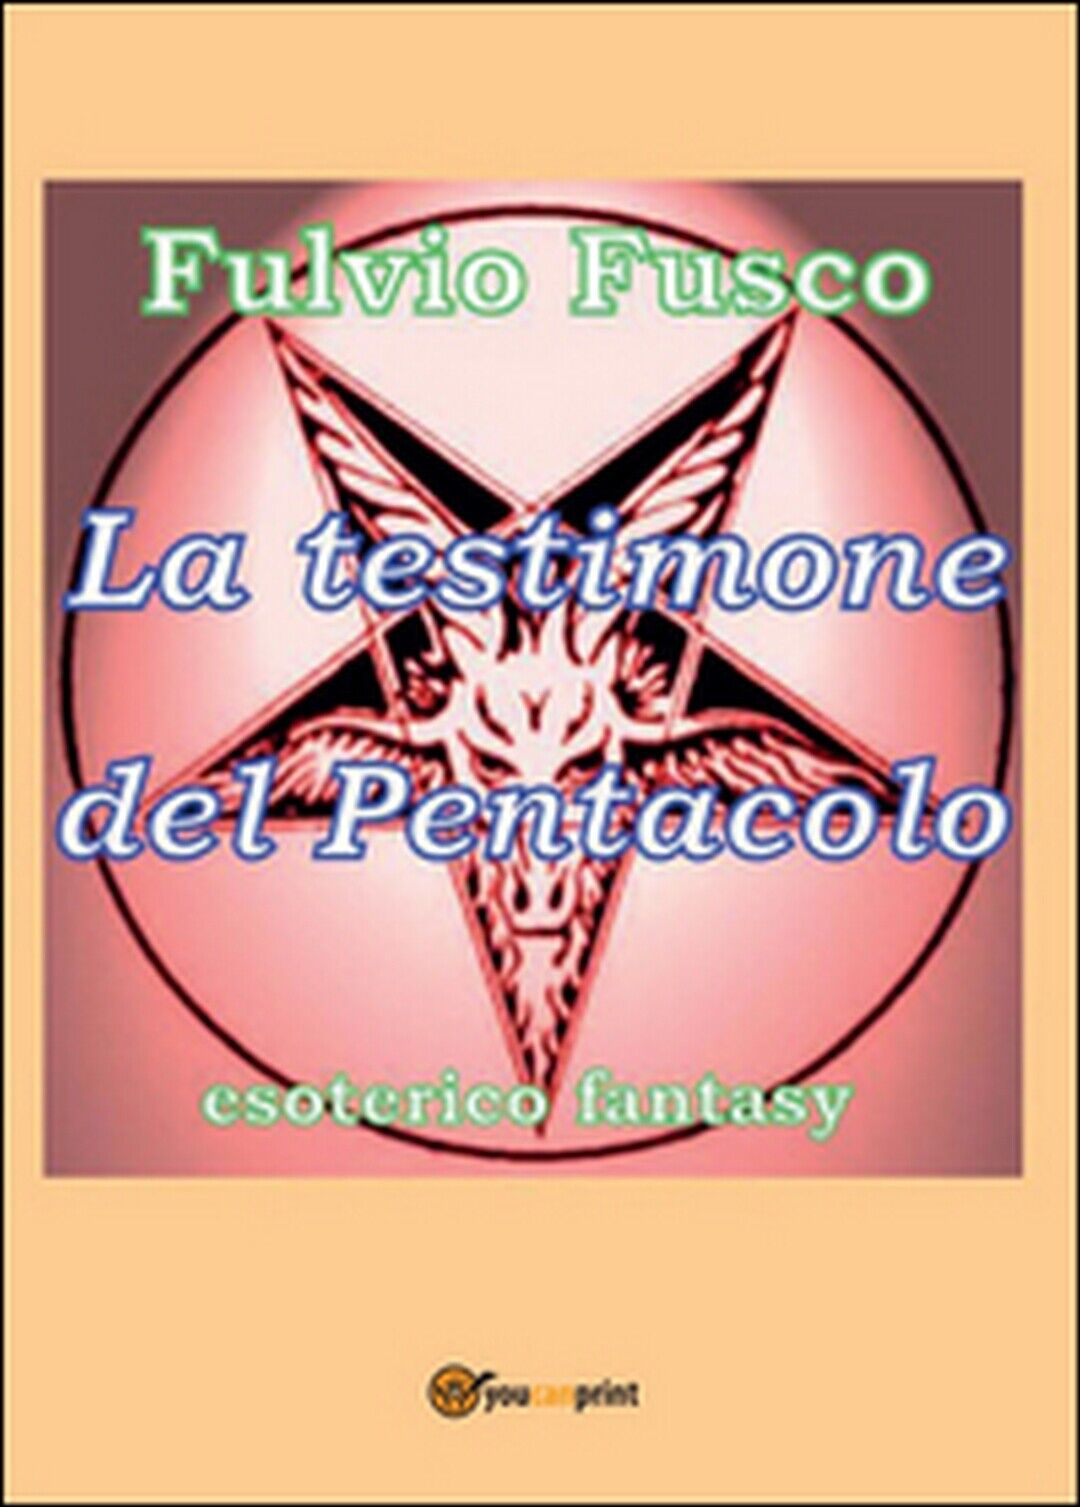 La testimone del pentacolo  di Fulvio Fusco,  2016,  Youcanprint